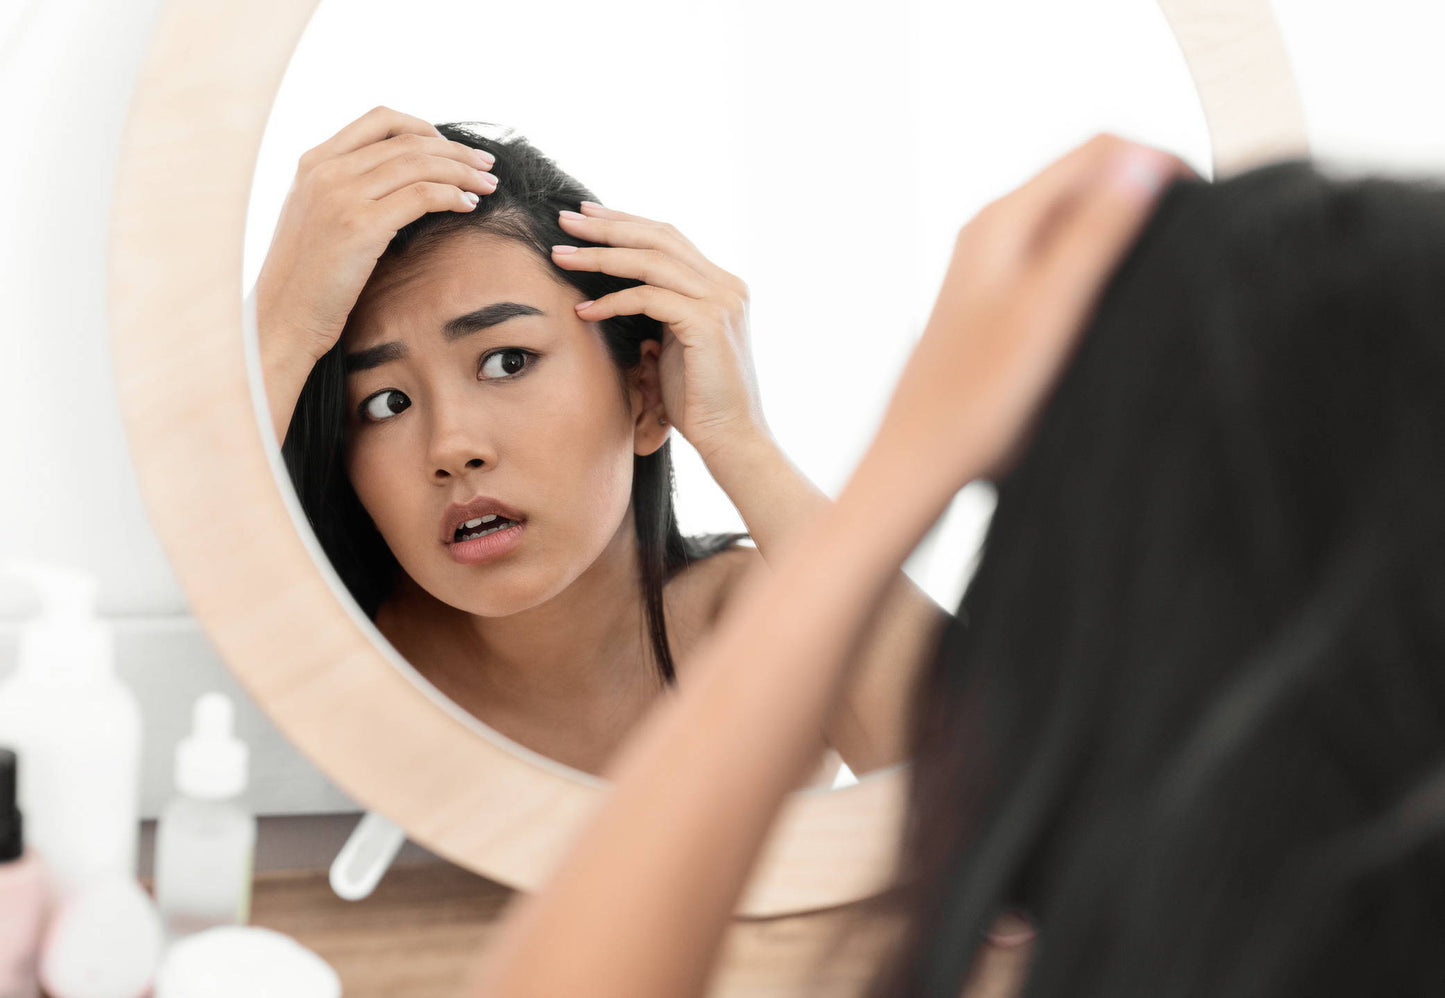 What Autoimmune Disease Causes Hair Loss?